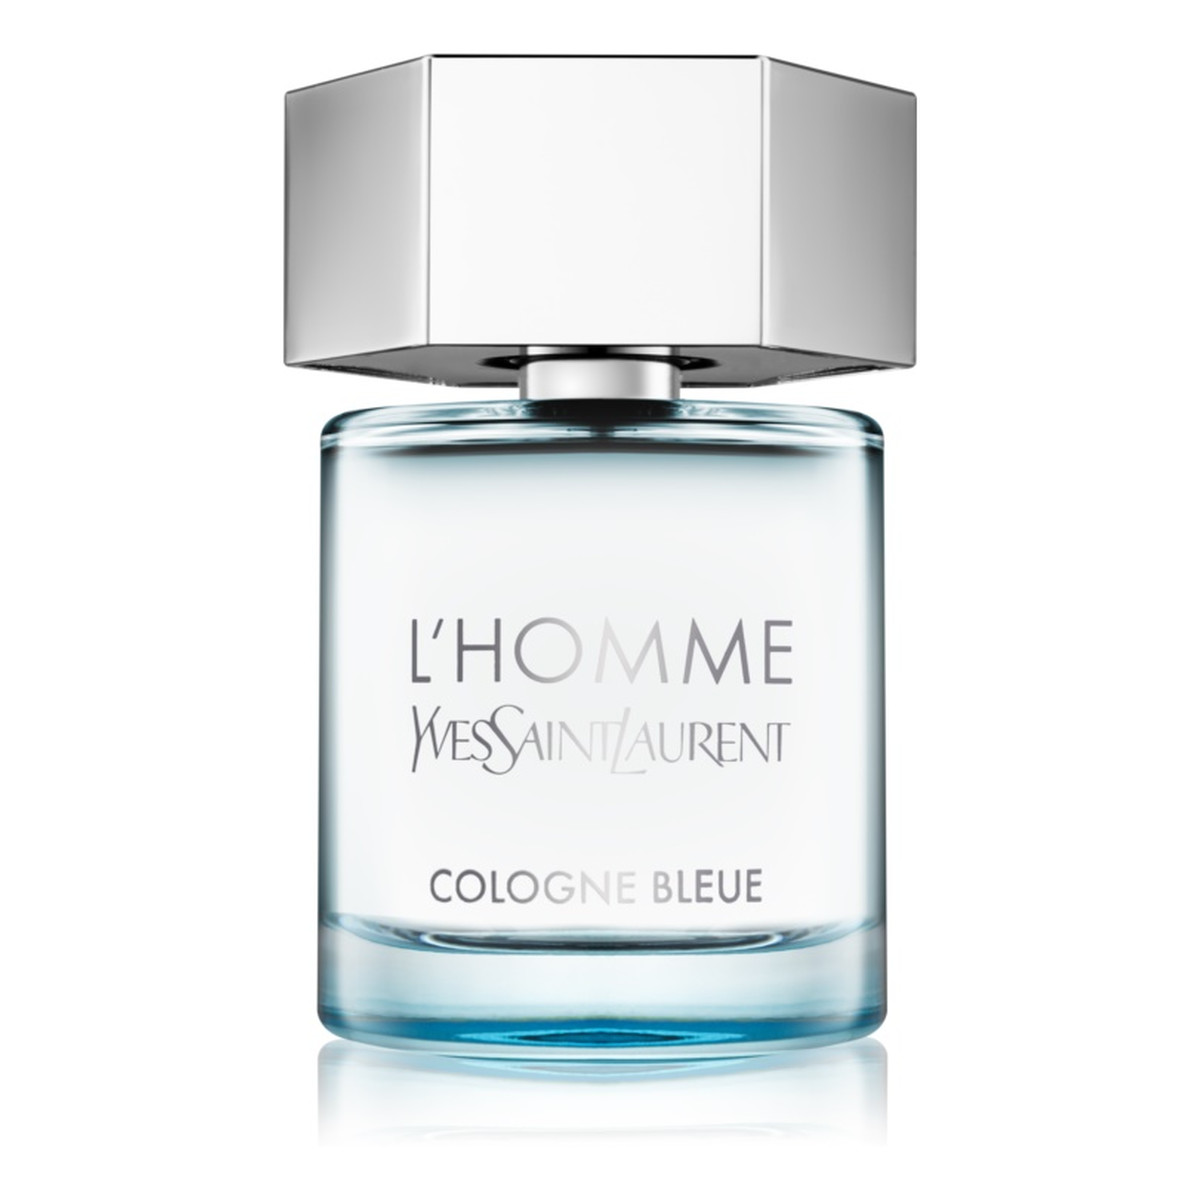 Yves Saint Laurent L'Homme Cologne Bleue woda toaletowa 100ml